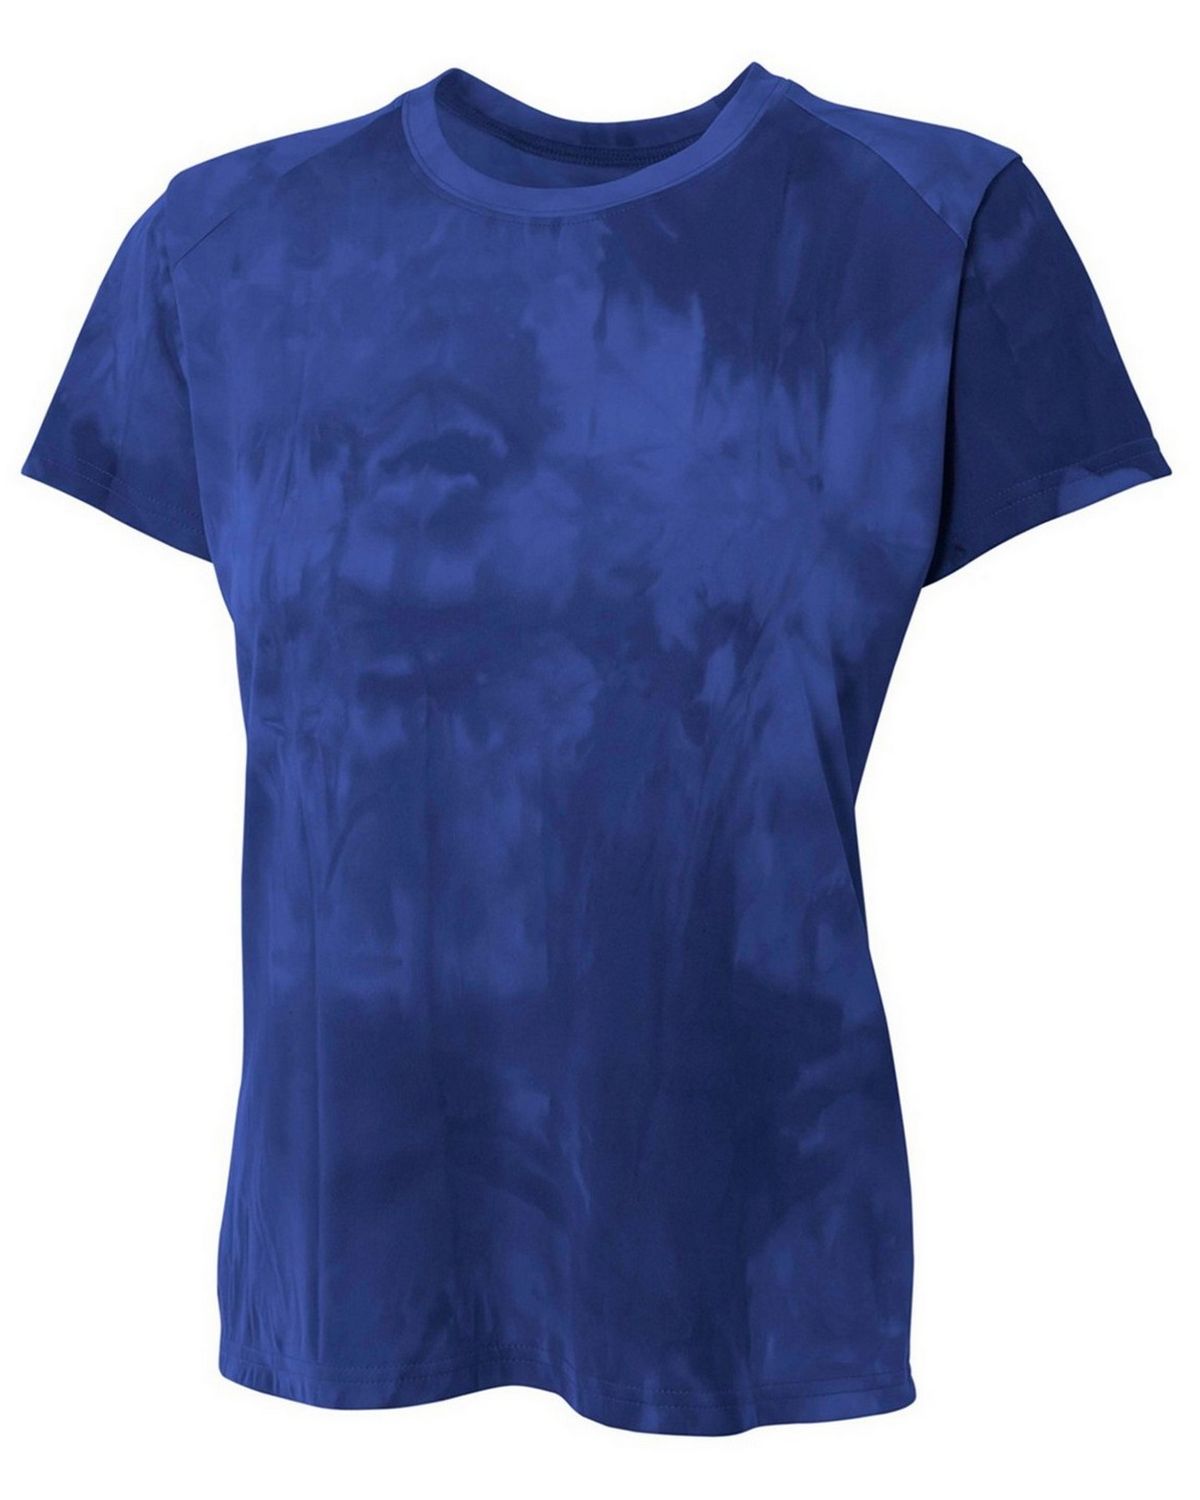 A4 NW3295 Women's Cloud Dye Tech T-Shirt